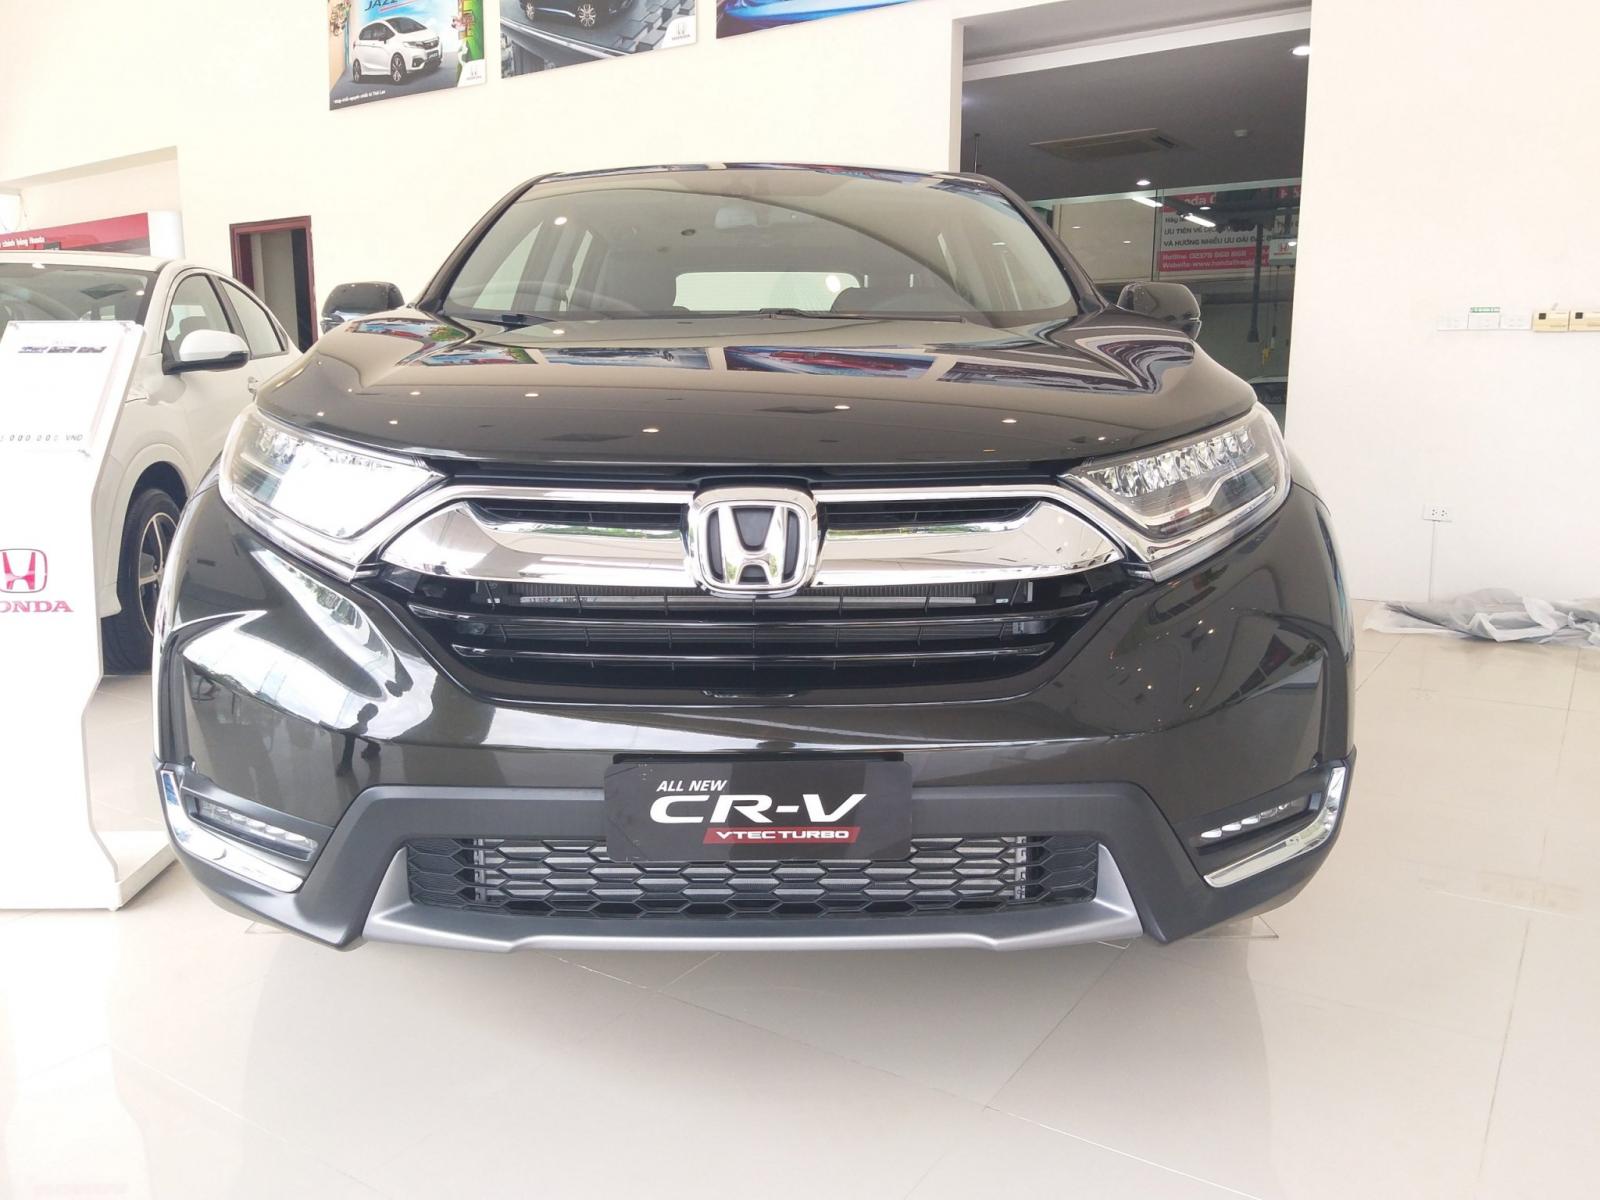 Honda Ôtô Thanh Hóa, giao ngay Honda CRV 1.5 Turbo, màu đen, đời 2019, giá cực sốc, LH: 0962028368-0